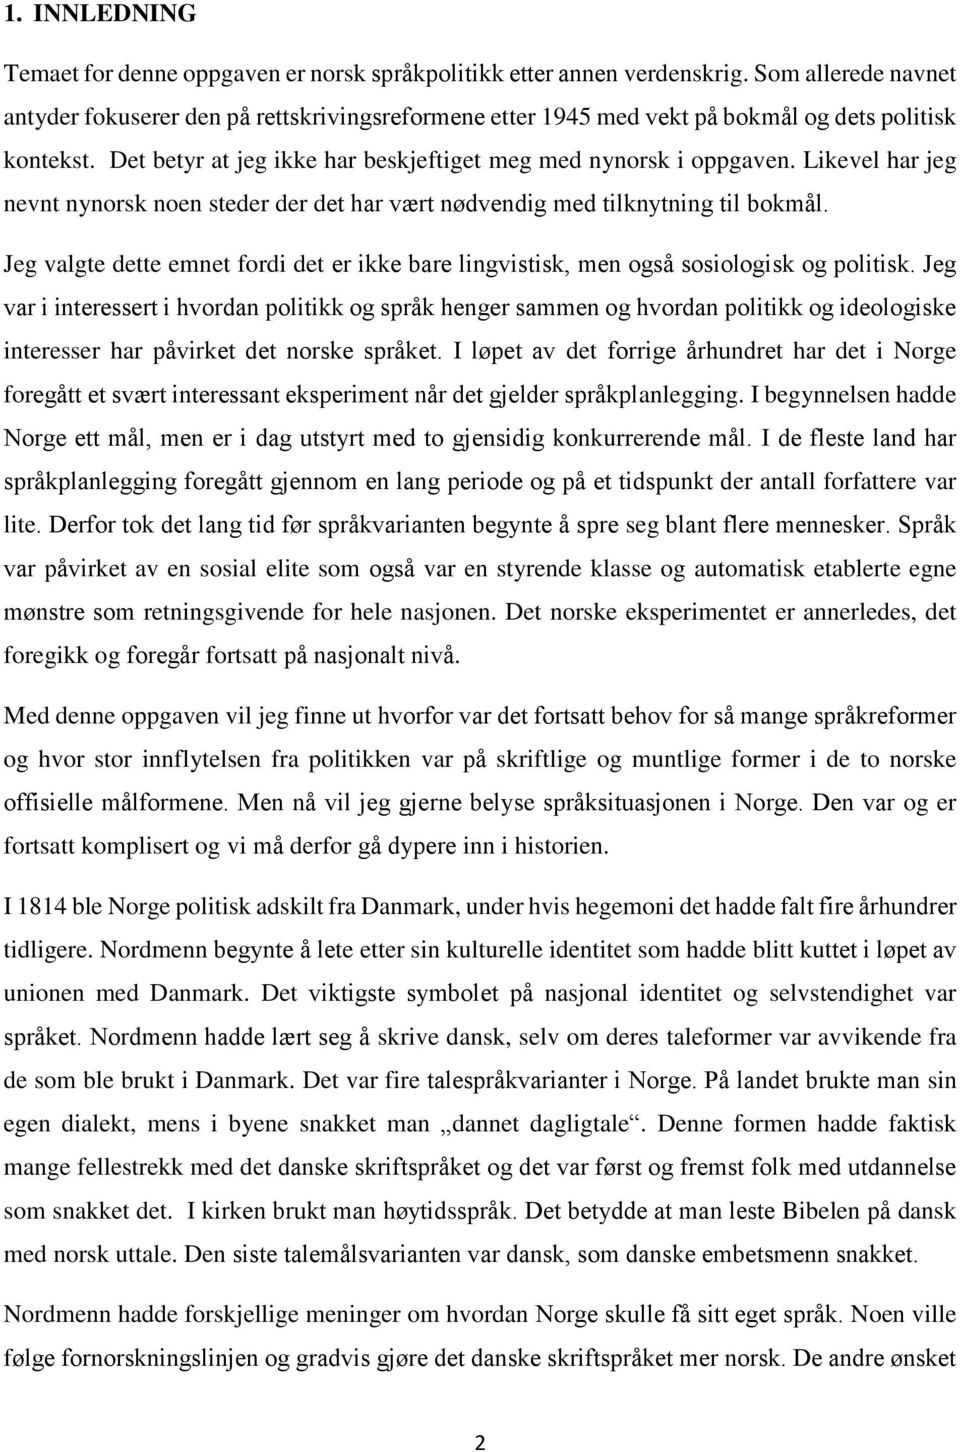 Likevel har jeg nevnt nynorsk noen steder der det har vært nødvendig med tilknytning til bokmål. Jeg valgte dette emnet fordi det er ikke bare lingvistisk, men også sosiologisk og politisk.